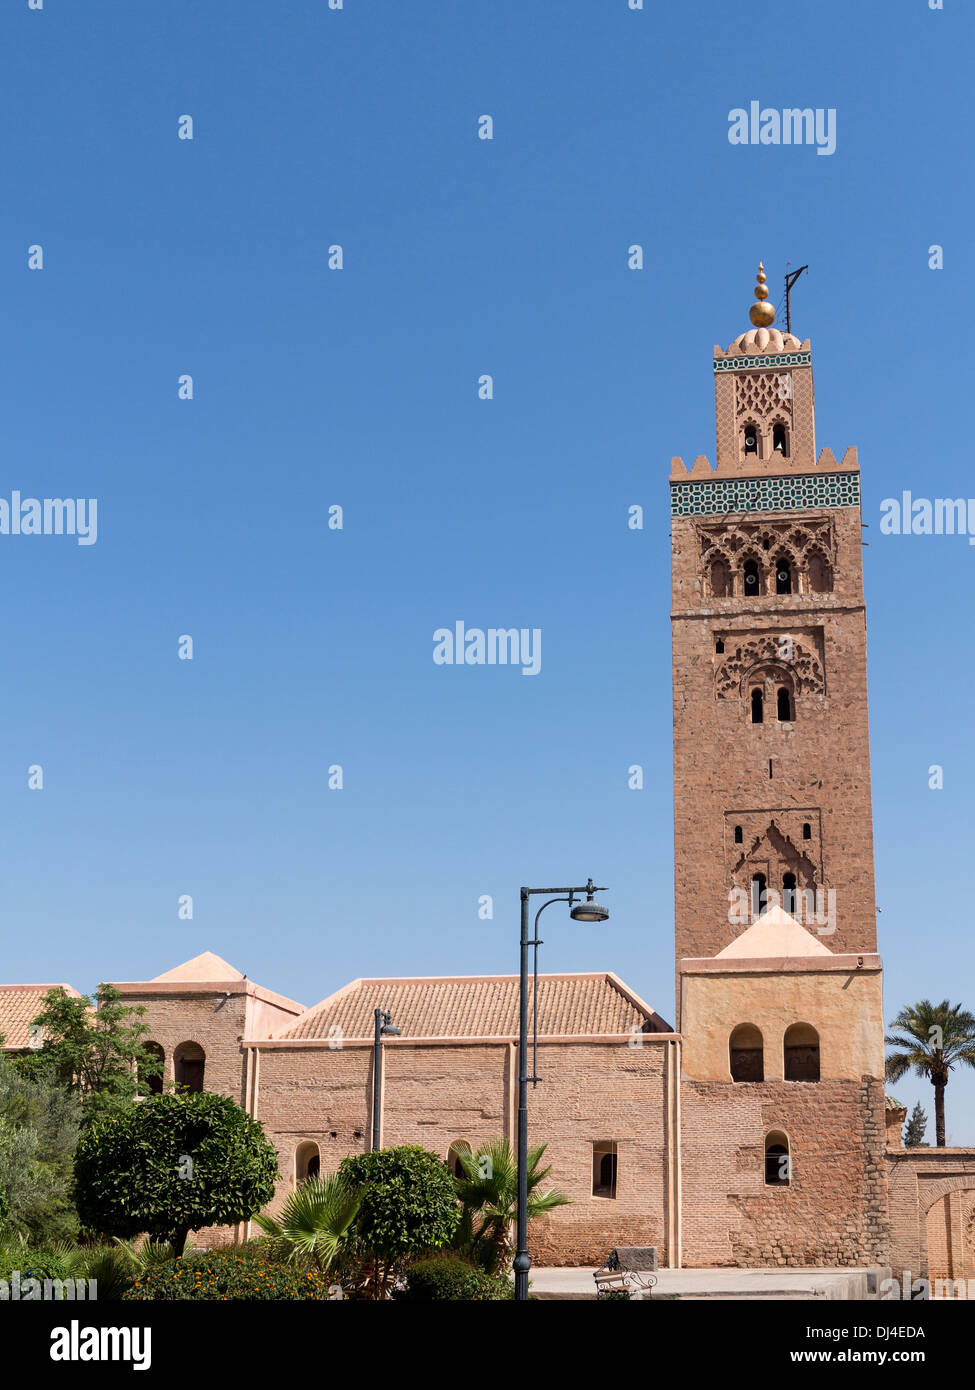 The Koutoubia Mosque / Kutubiyya Mosque, Marrakech, Morocco. Stock Photo